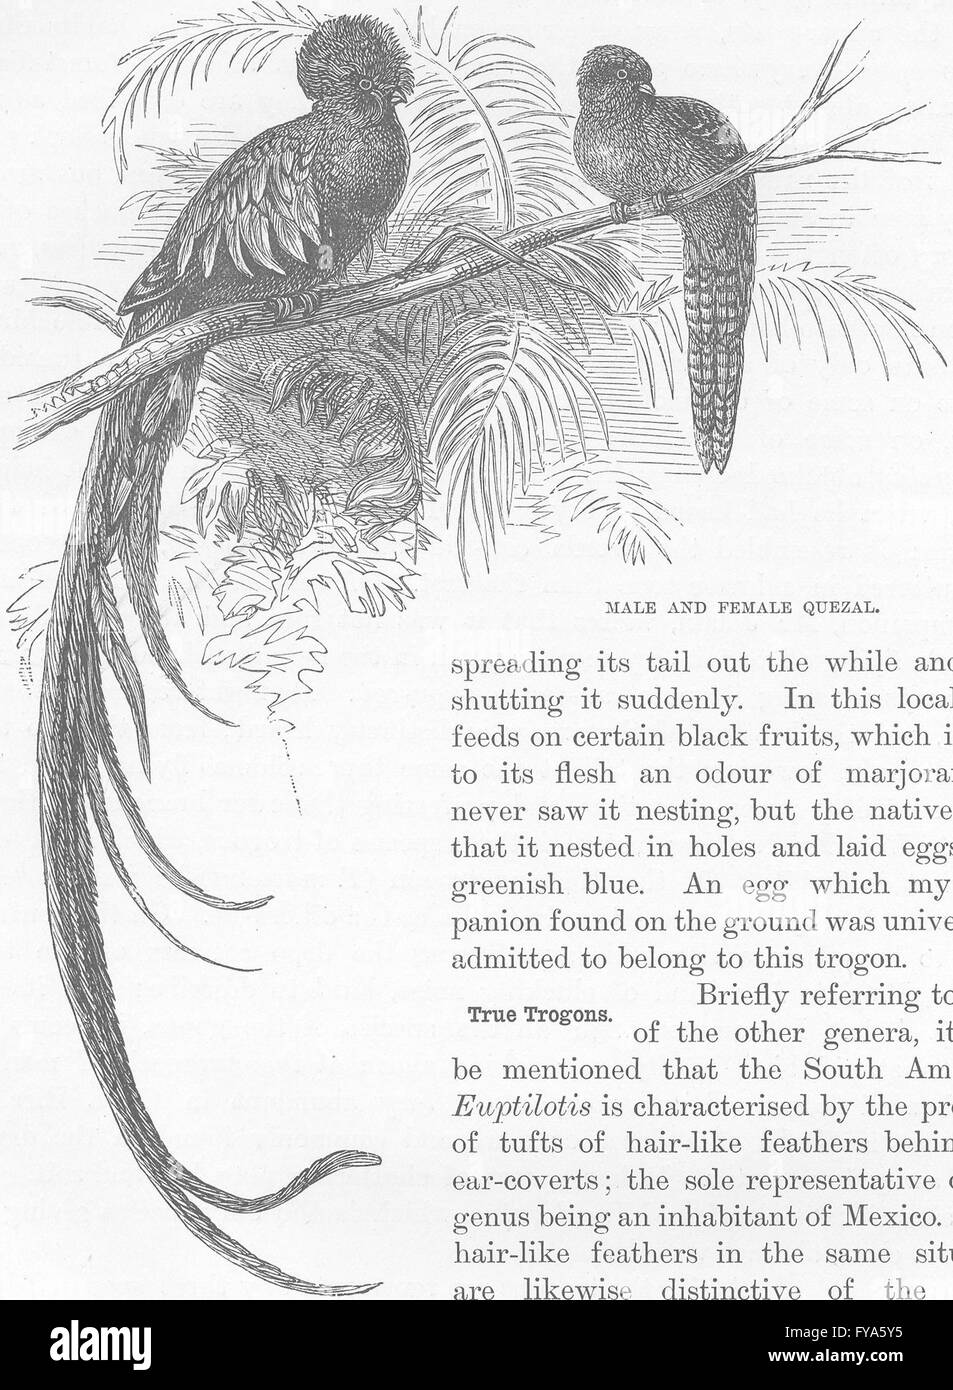 Vögel: Männliche und weibliche Quezal, antiken Druck 1895 Stockfoto